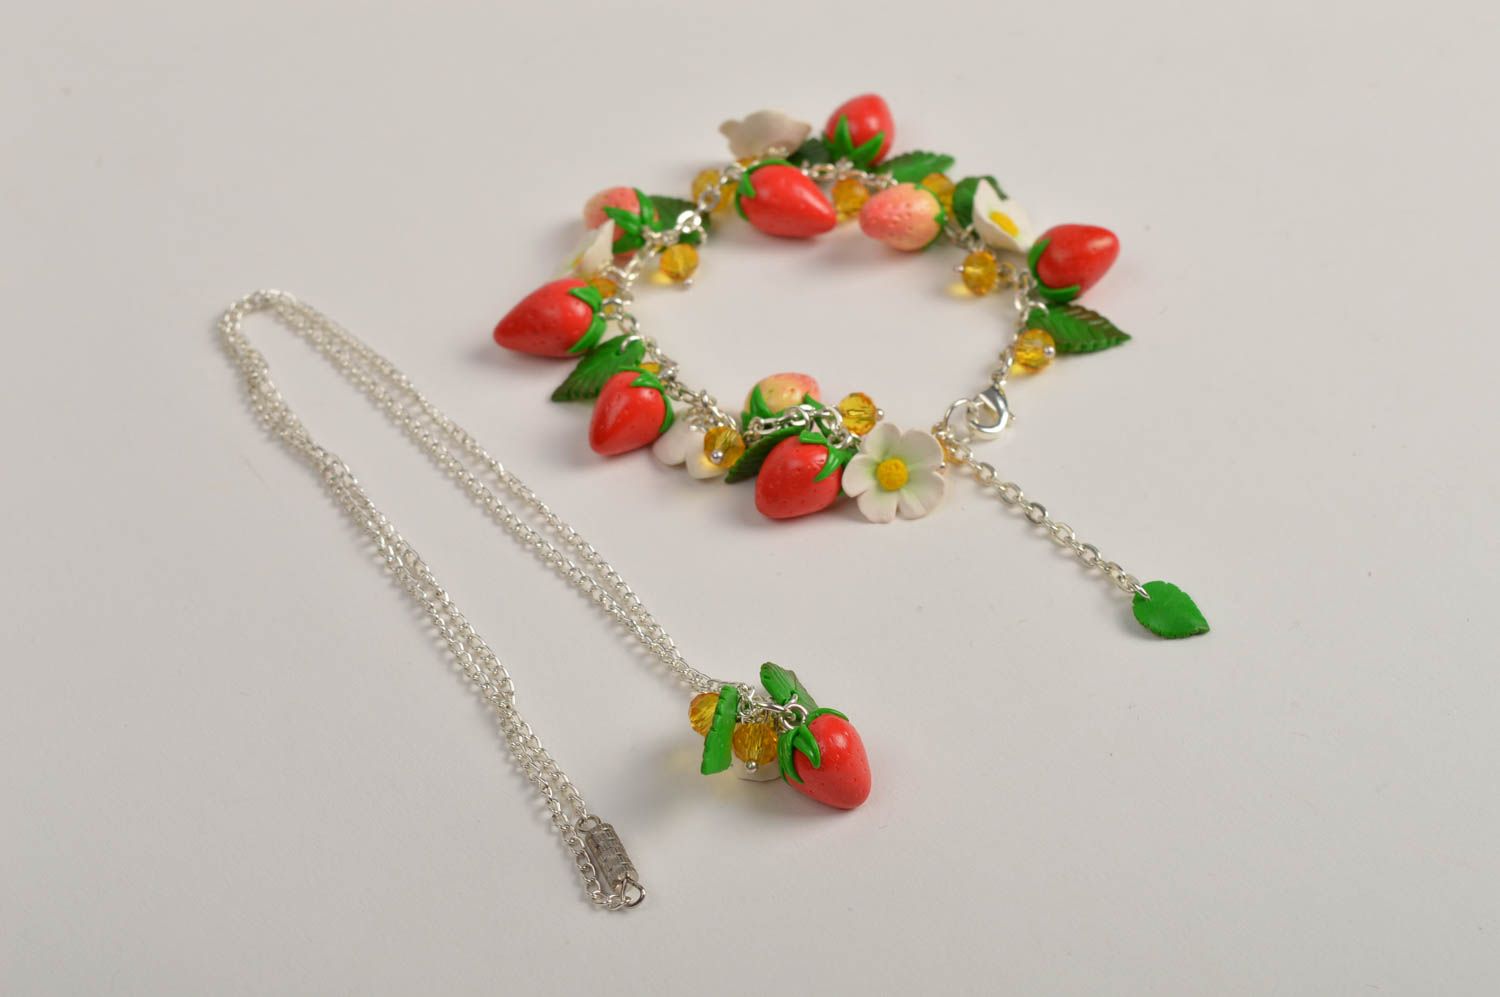 Handmade wrist bracelet necklace pendant polymer clay strawberry jewelry photo 2